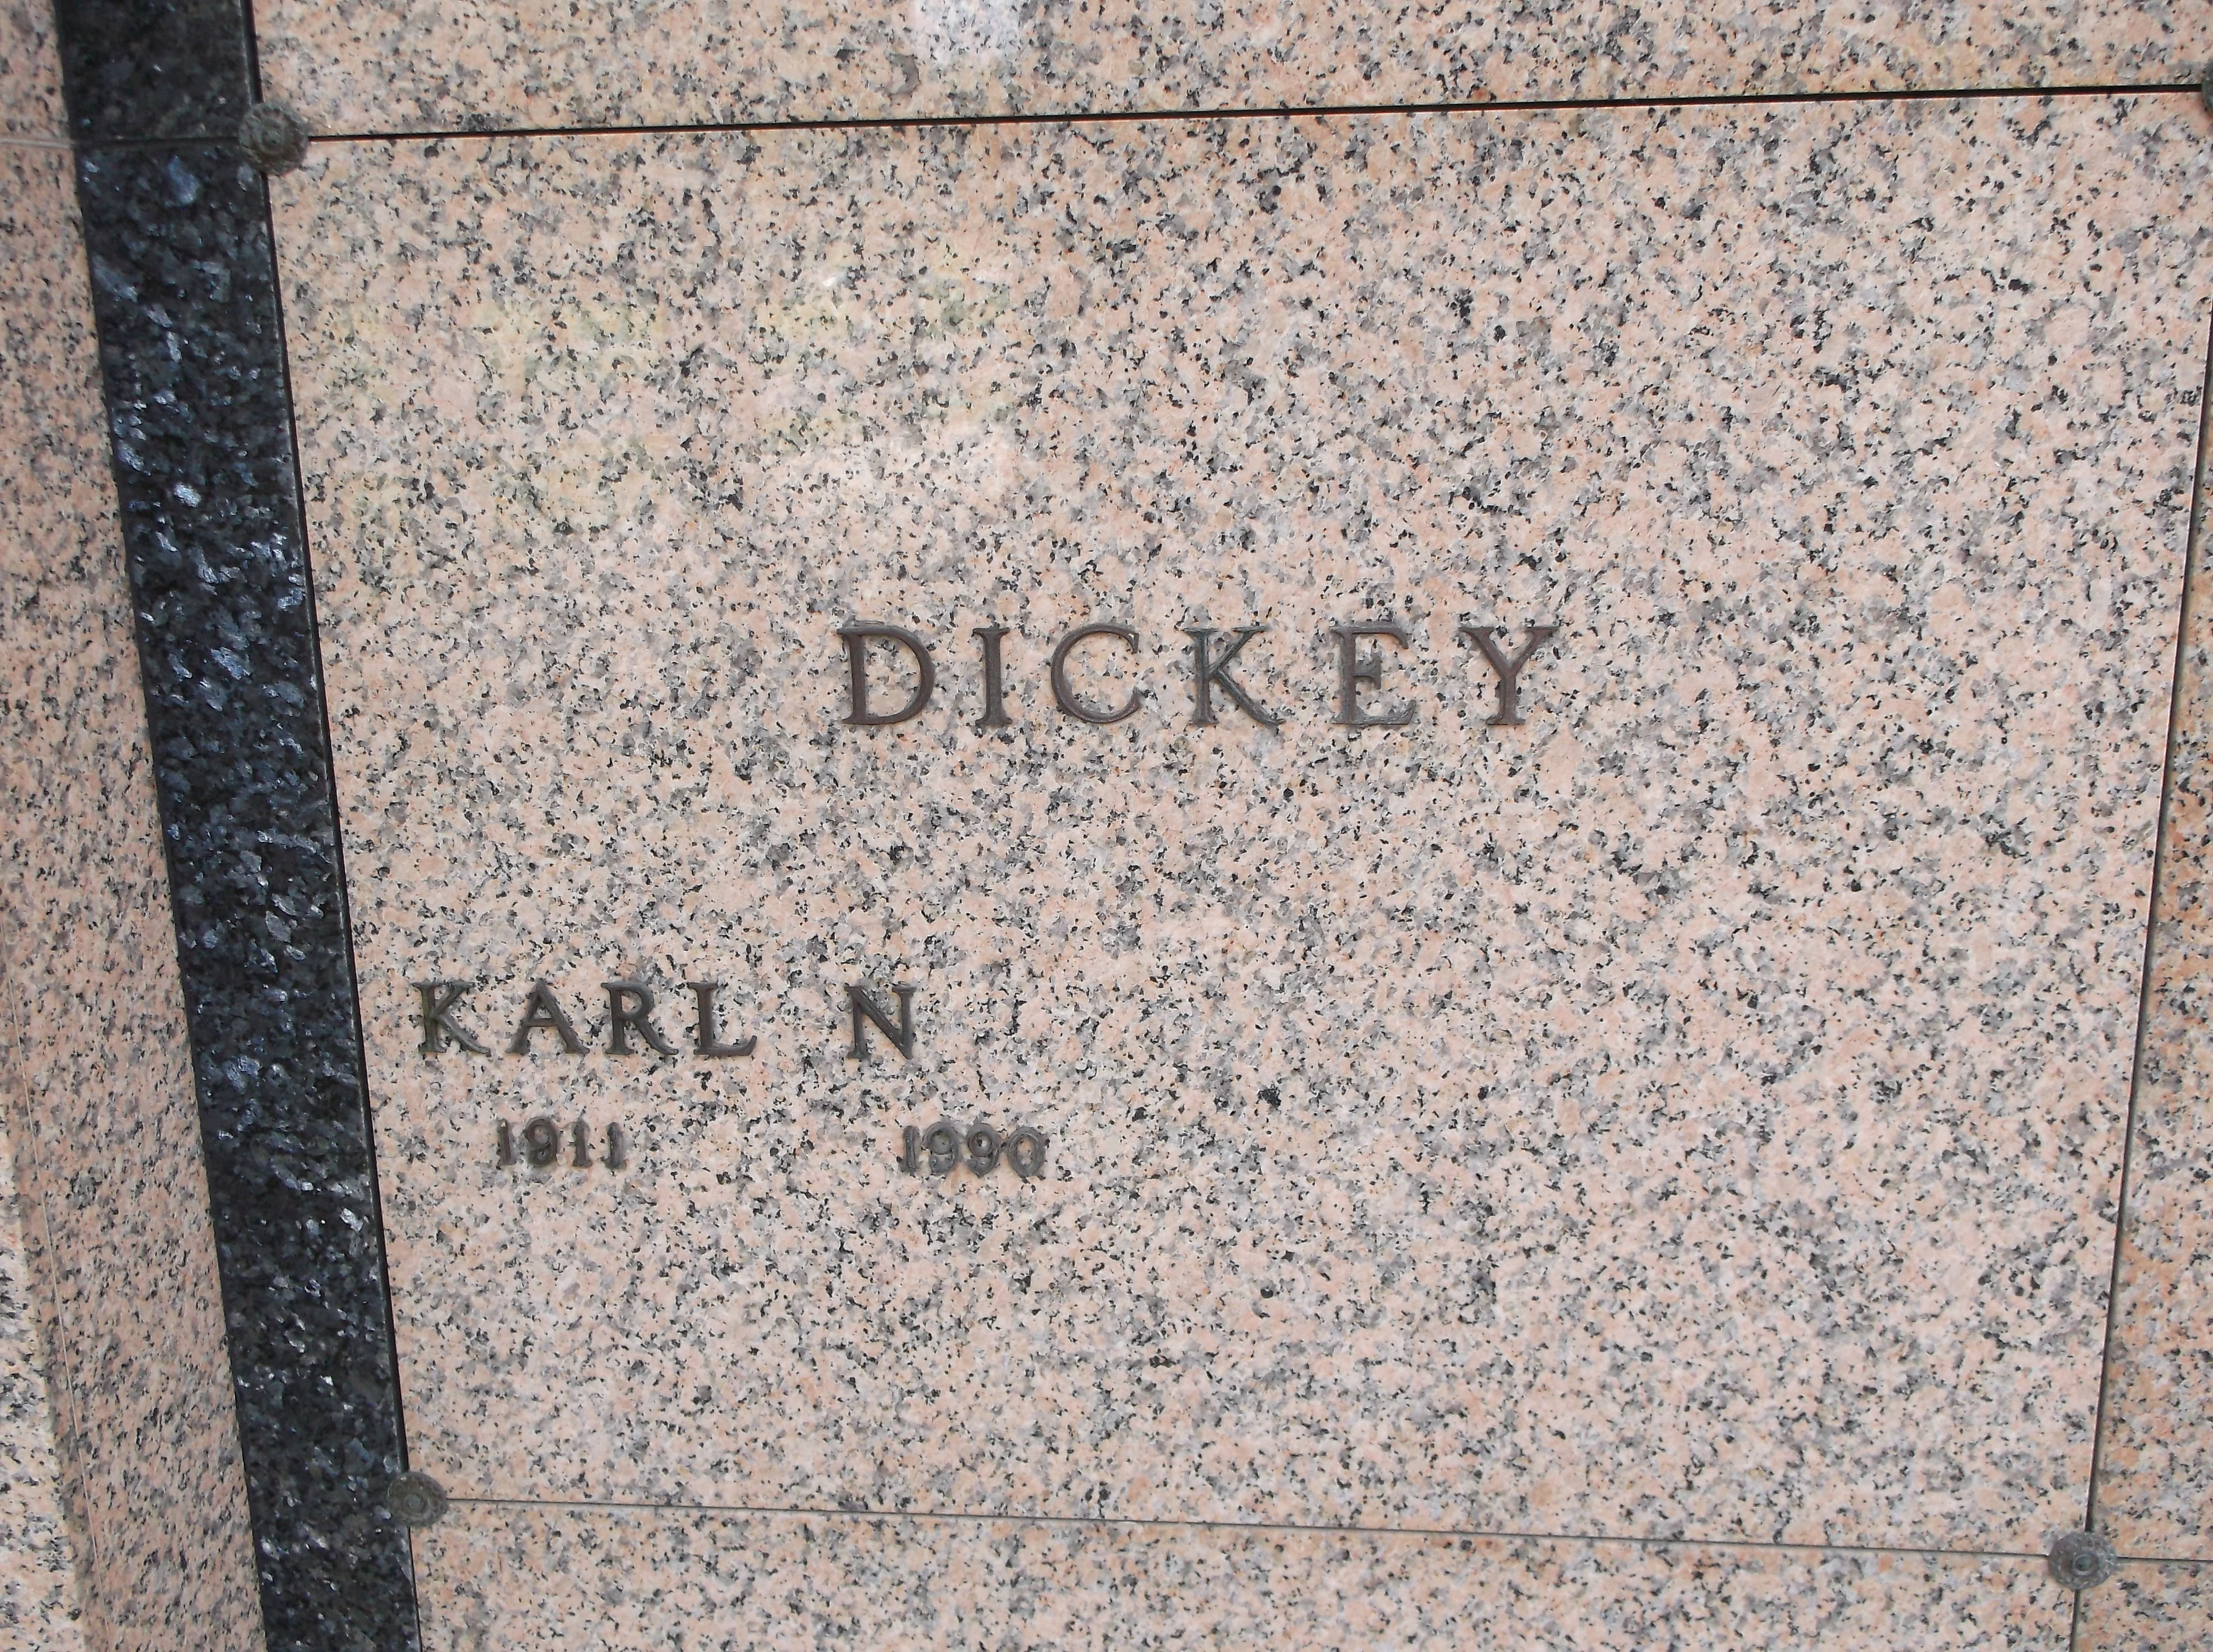 Karl N Dickey